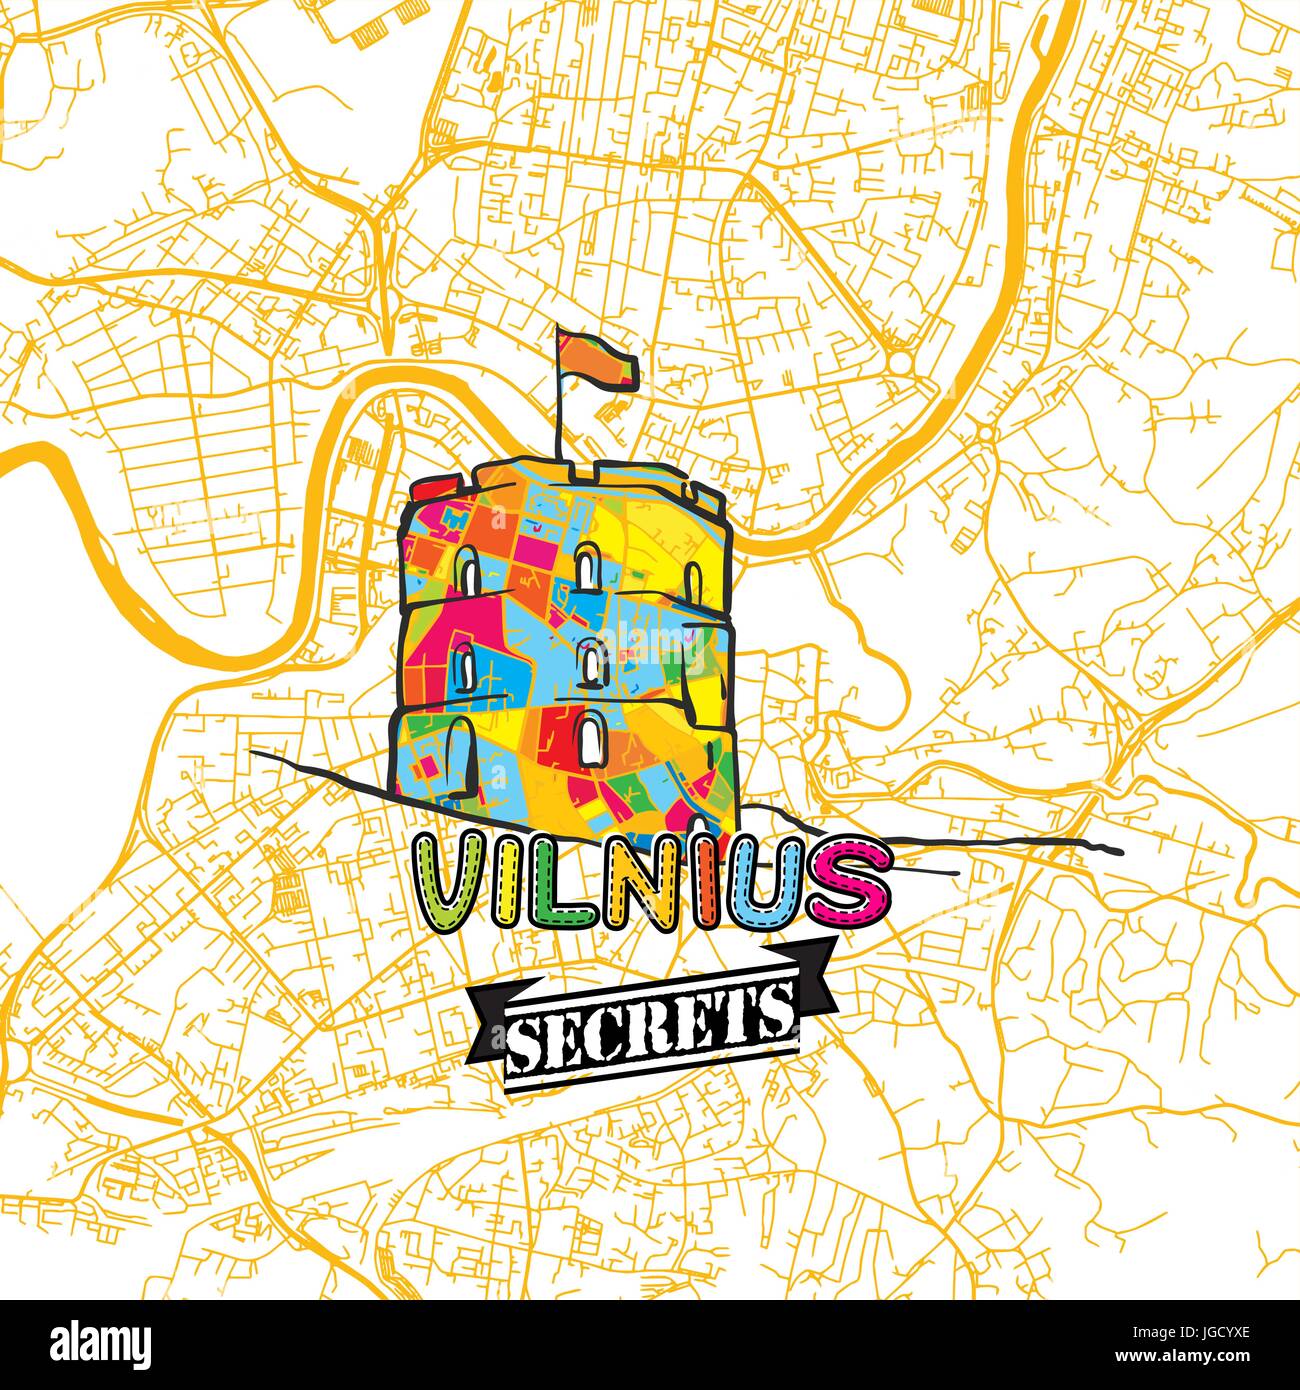 Vilnius Reisen Geheimnisse Art Map für die Zuordnung von Experten und Reiseführer. Handgemachte Stadt Logo, Typo-Abzeichen und Hand gezeichnete Vektor-Bild an der Spitze sind gruppiert eine Stock Vektor